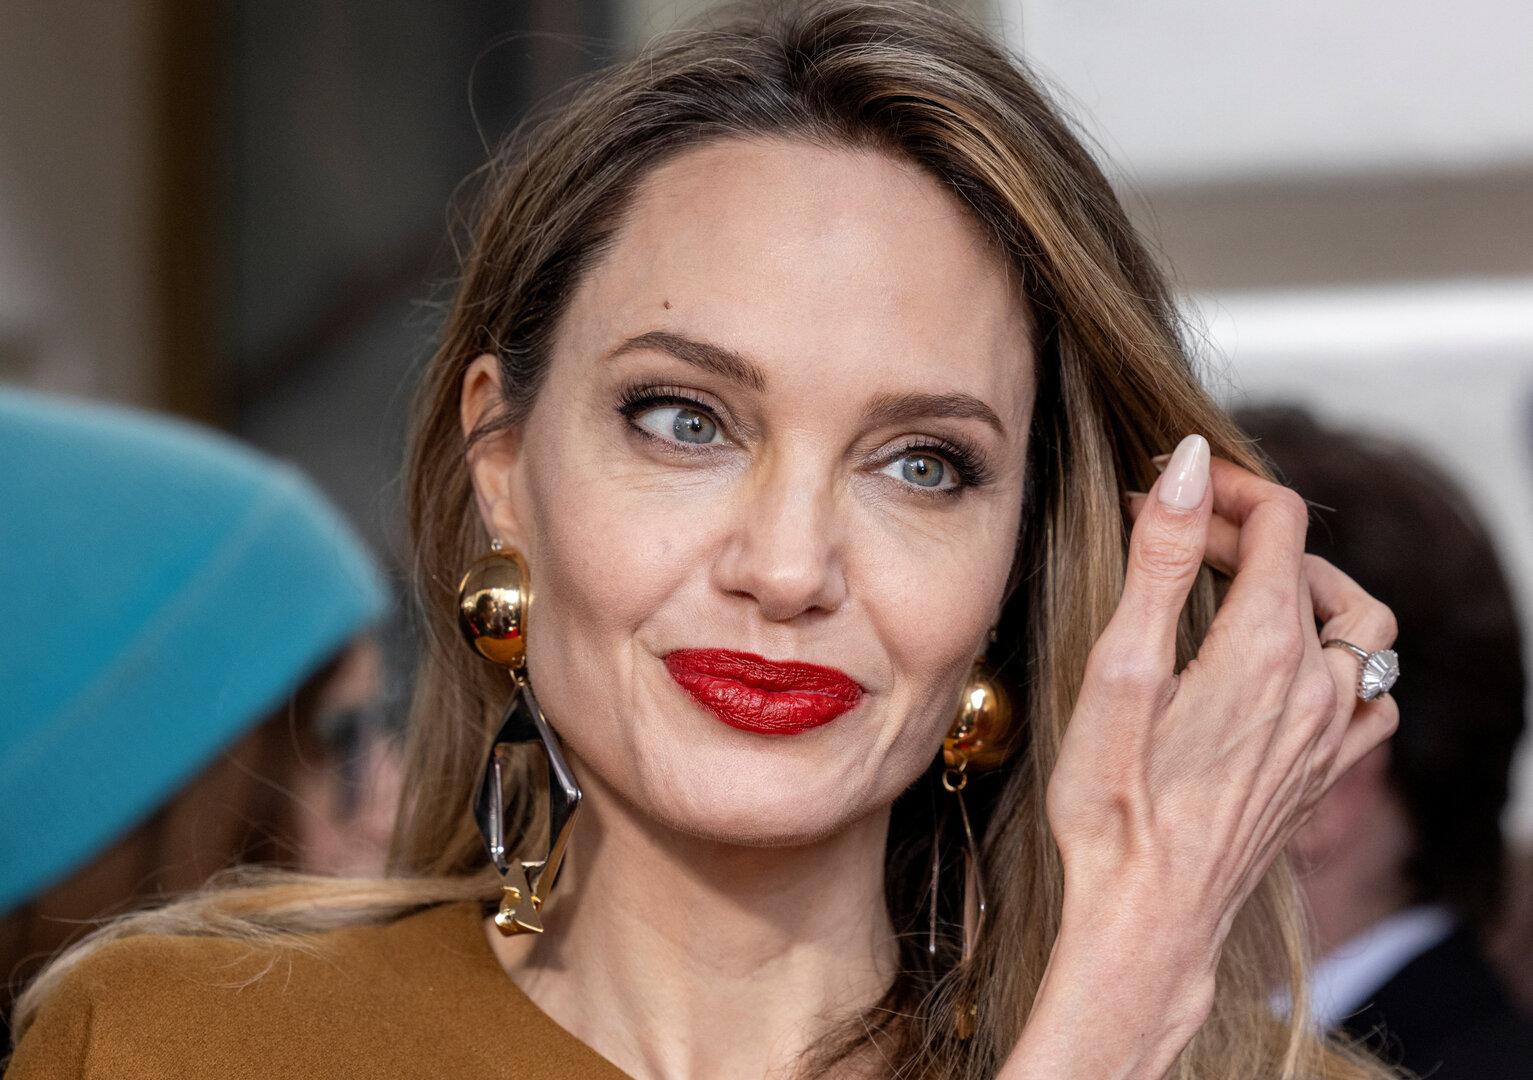 Neues Tattoo: Angelina Jolie trägt jetzt besondere 2 Worte unter der Haut